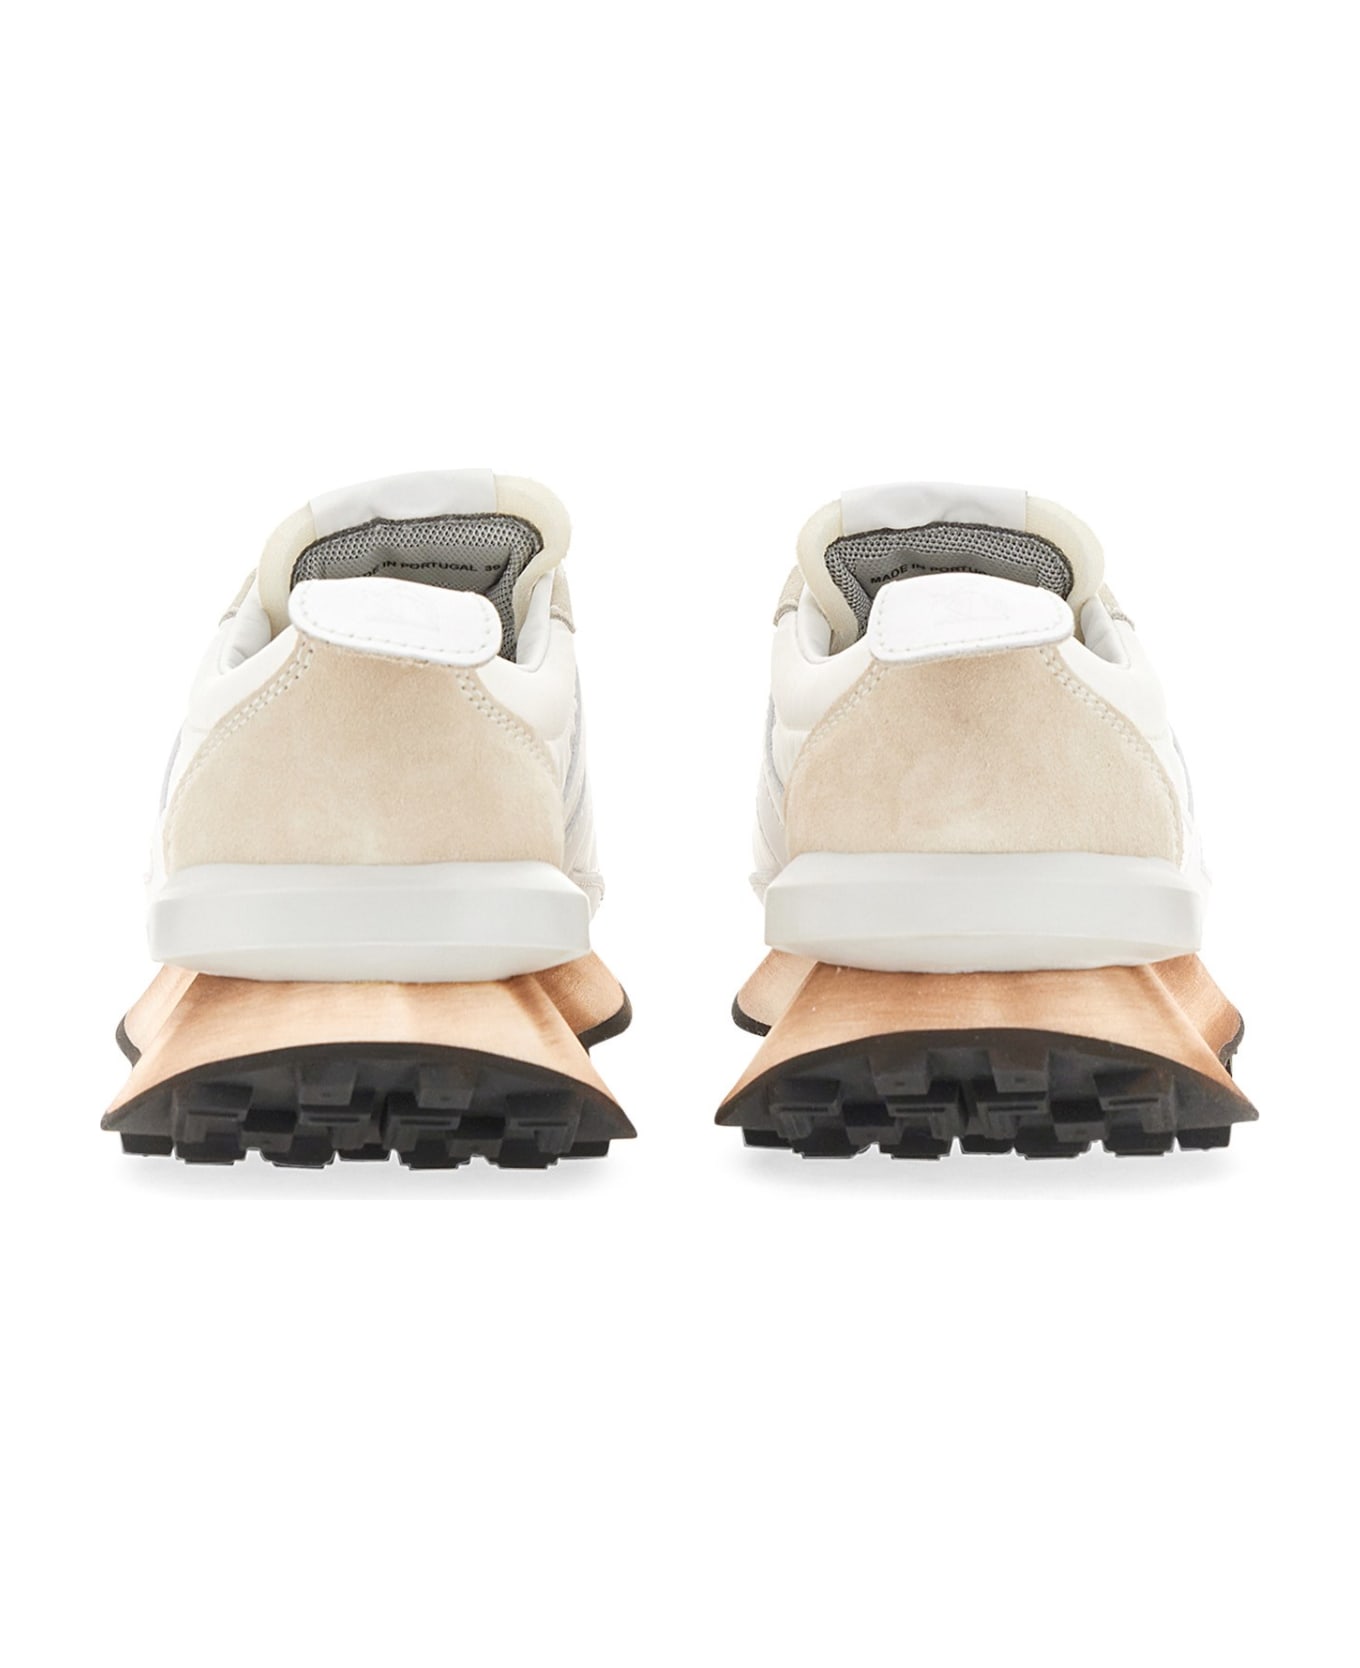 Lanvin Nylon Bumpr Sneaker - Optic White